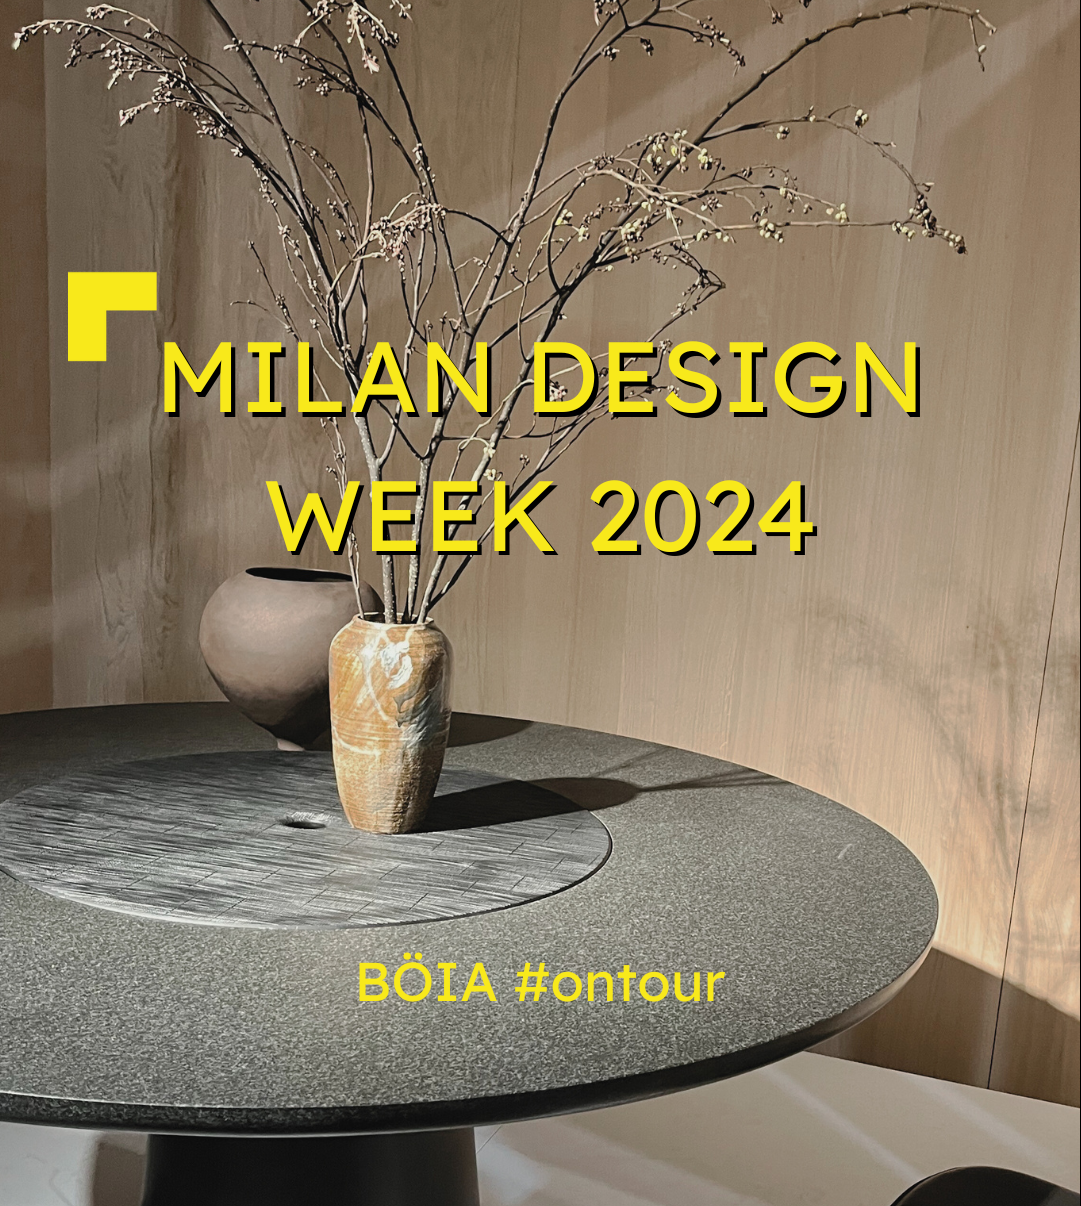 Milan Design Week 2024